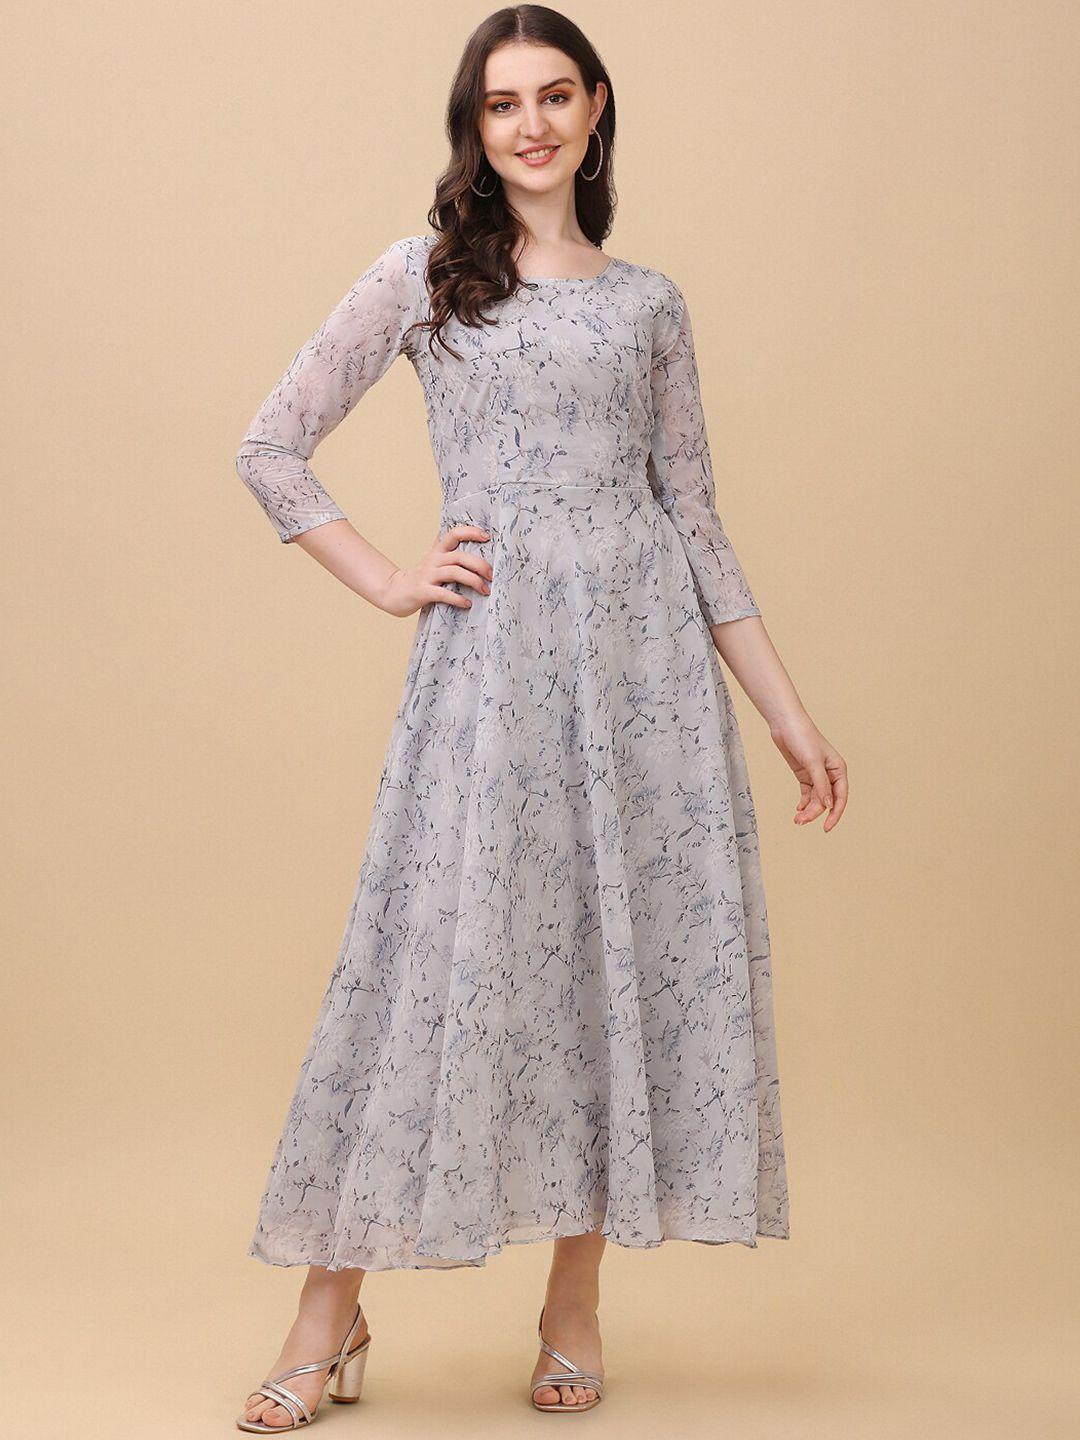 vidraa-western-store-floral-print-georgette-maxi-dress